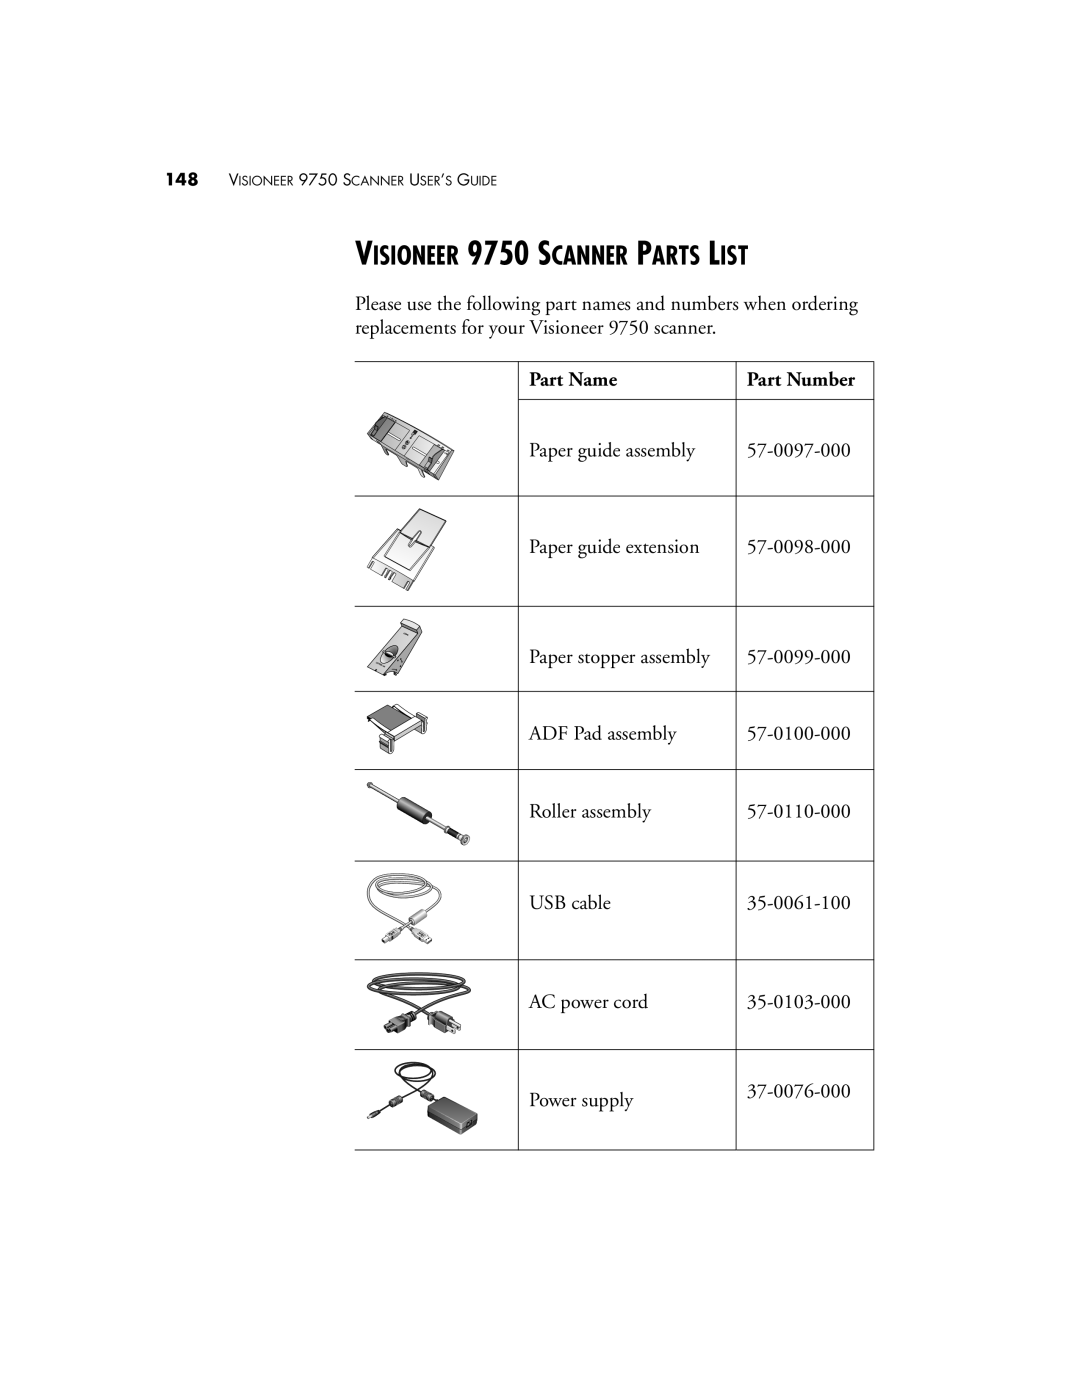 Visioneer manual VISIONEER 9750 SCANNER PARTS LIST, Part Name 